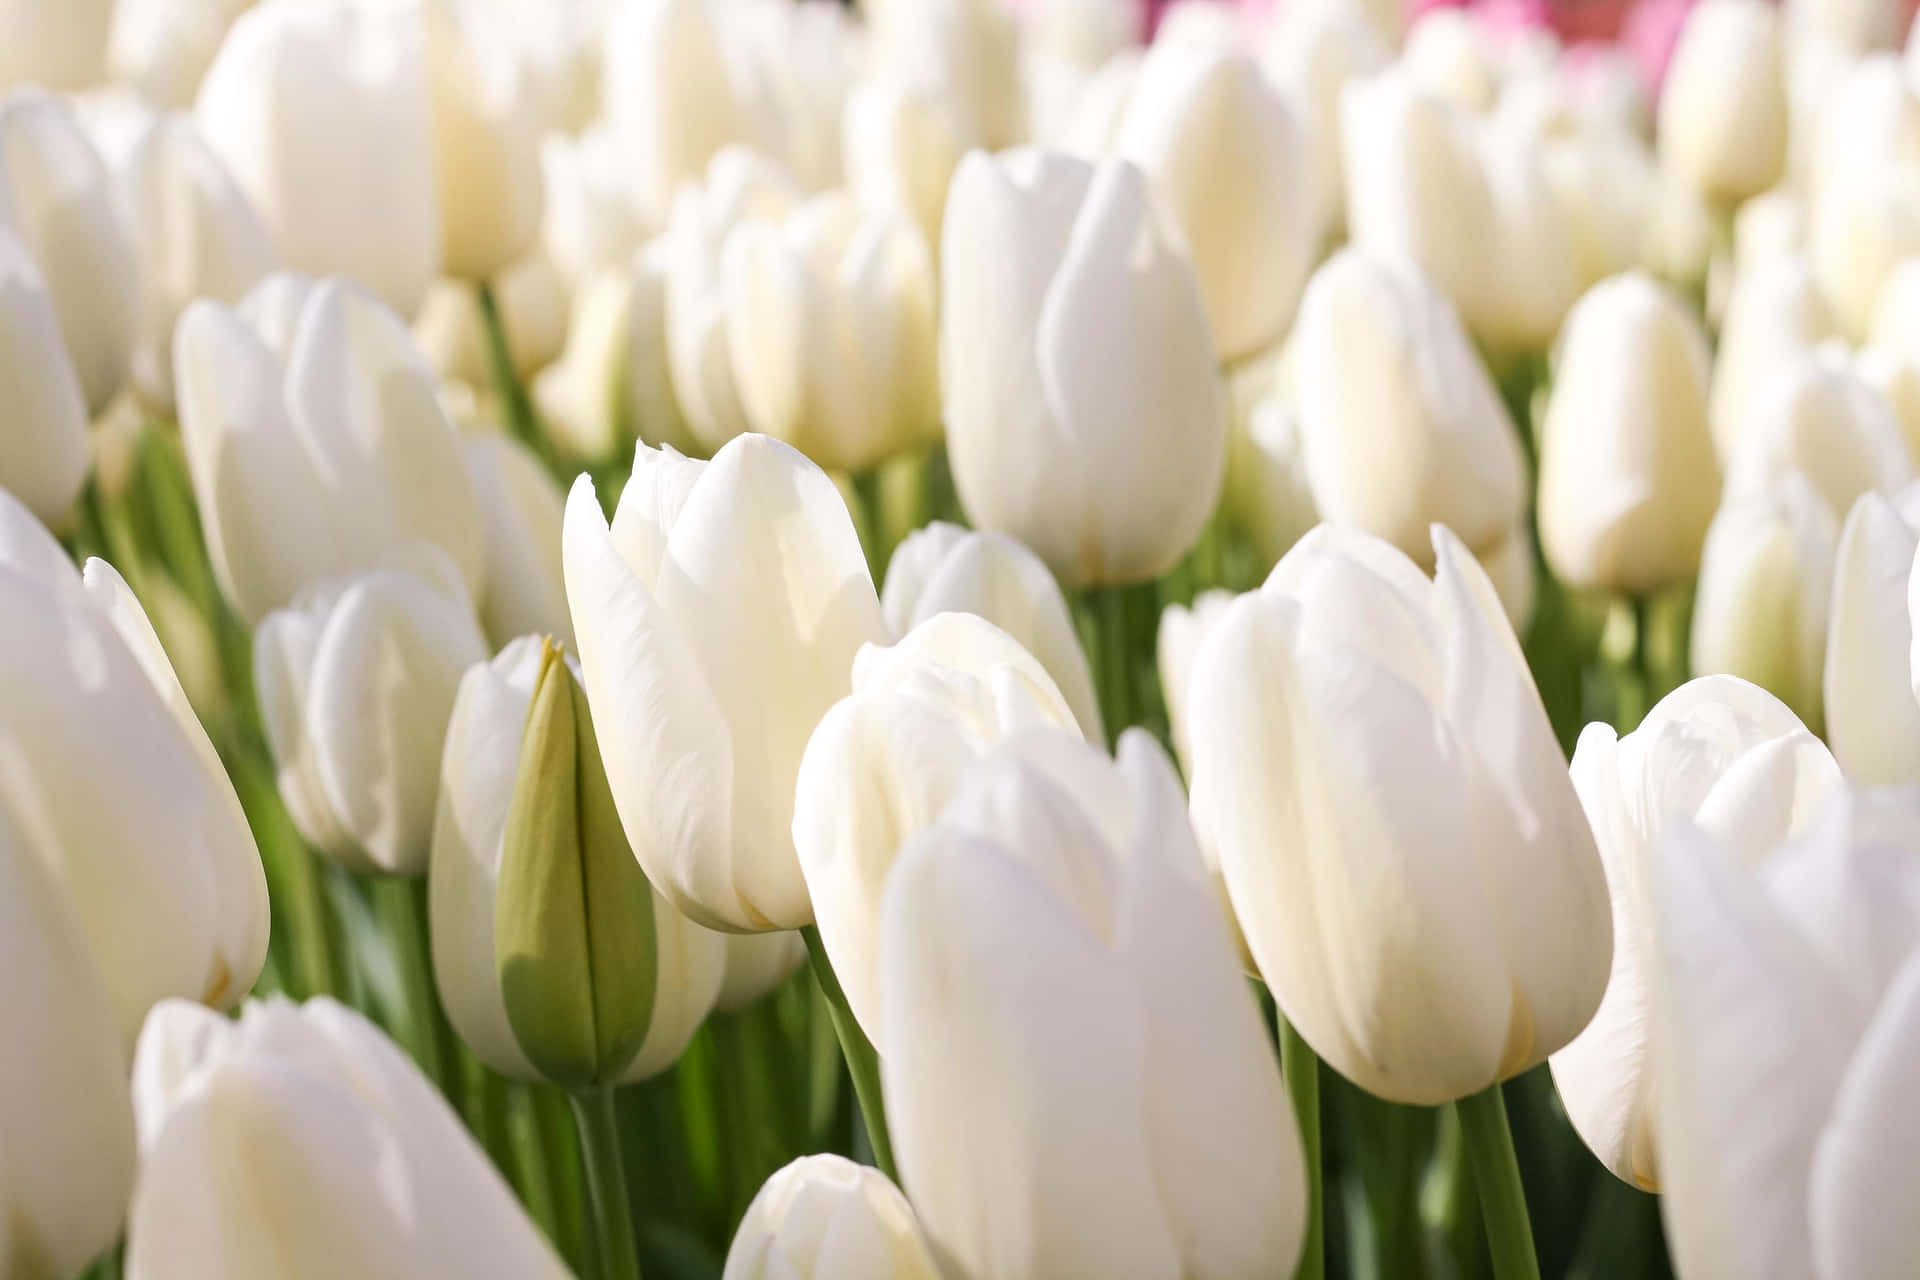 White Tulips Field Sunlit Aesthetic.jpg Wallpaper